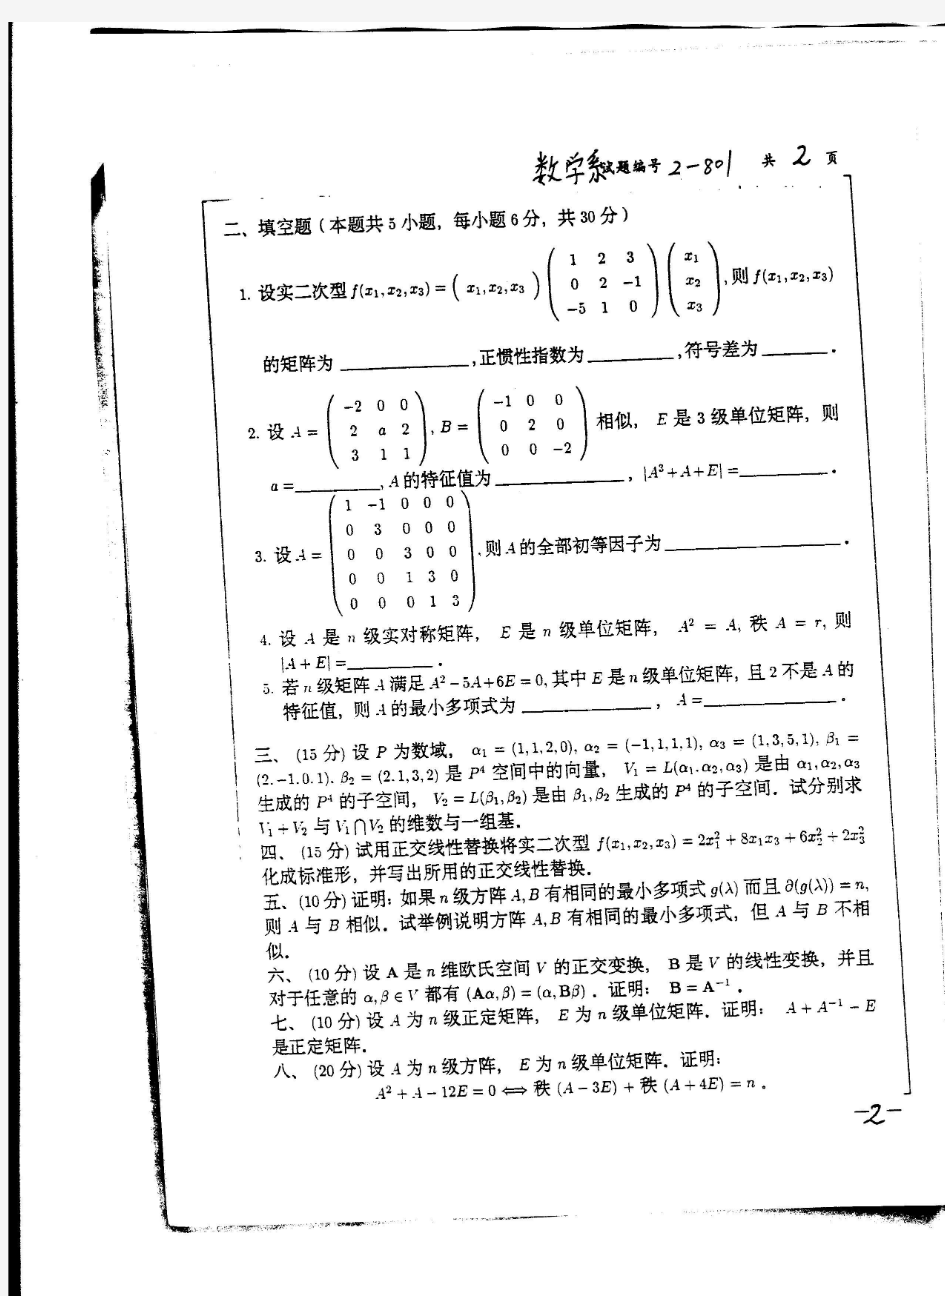 2006年南京大学高等代数考研真题-考研真题资料